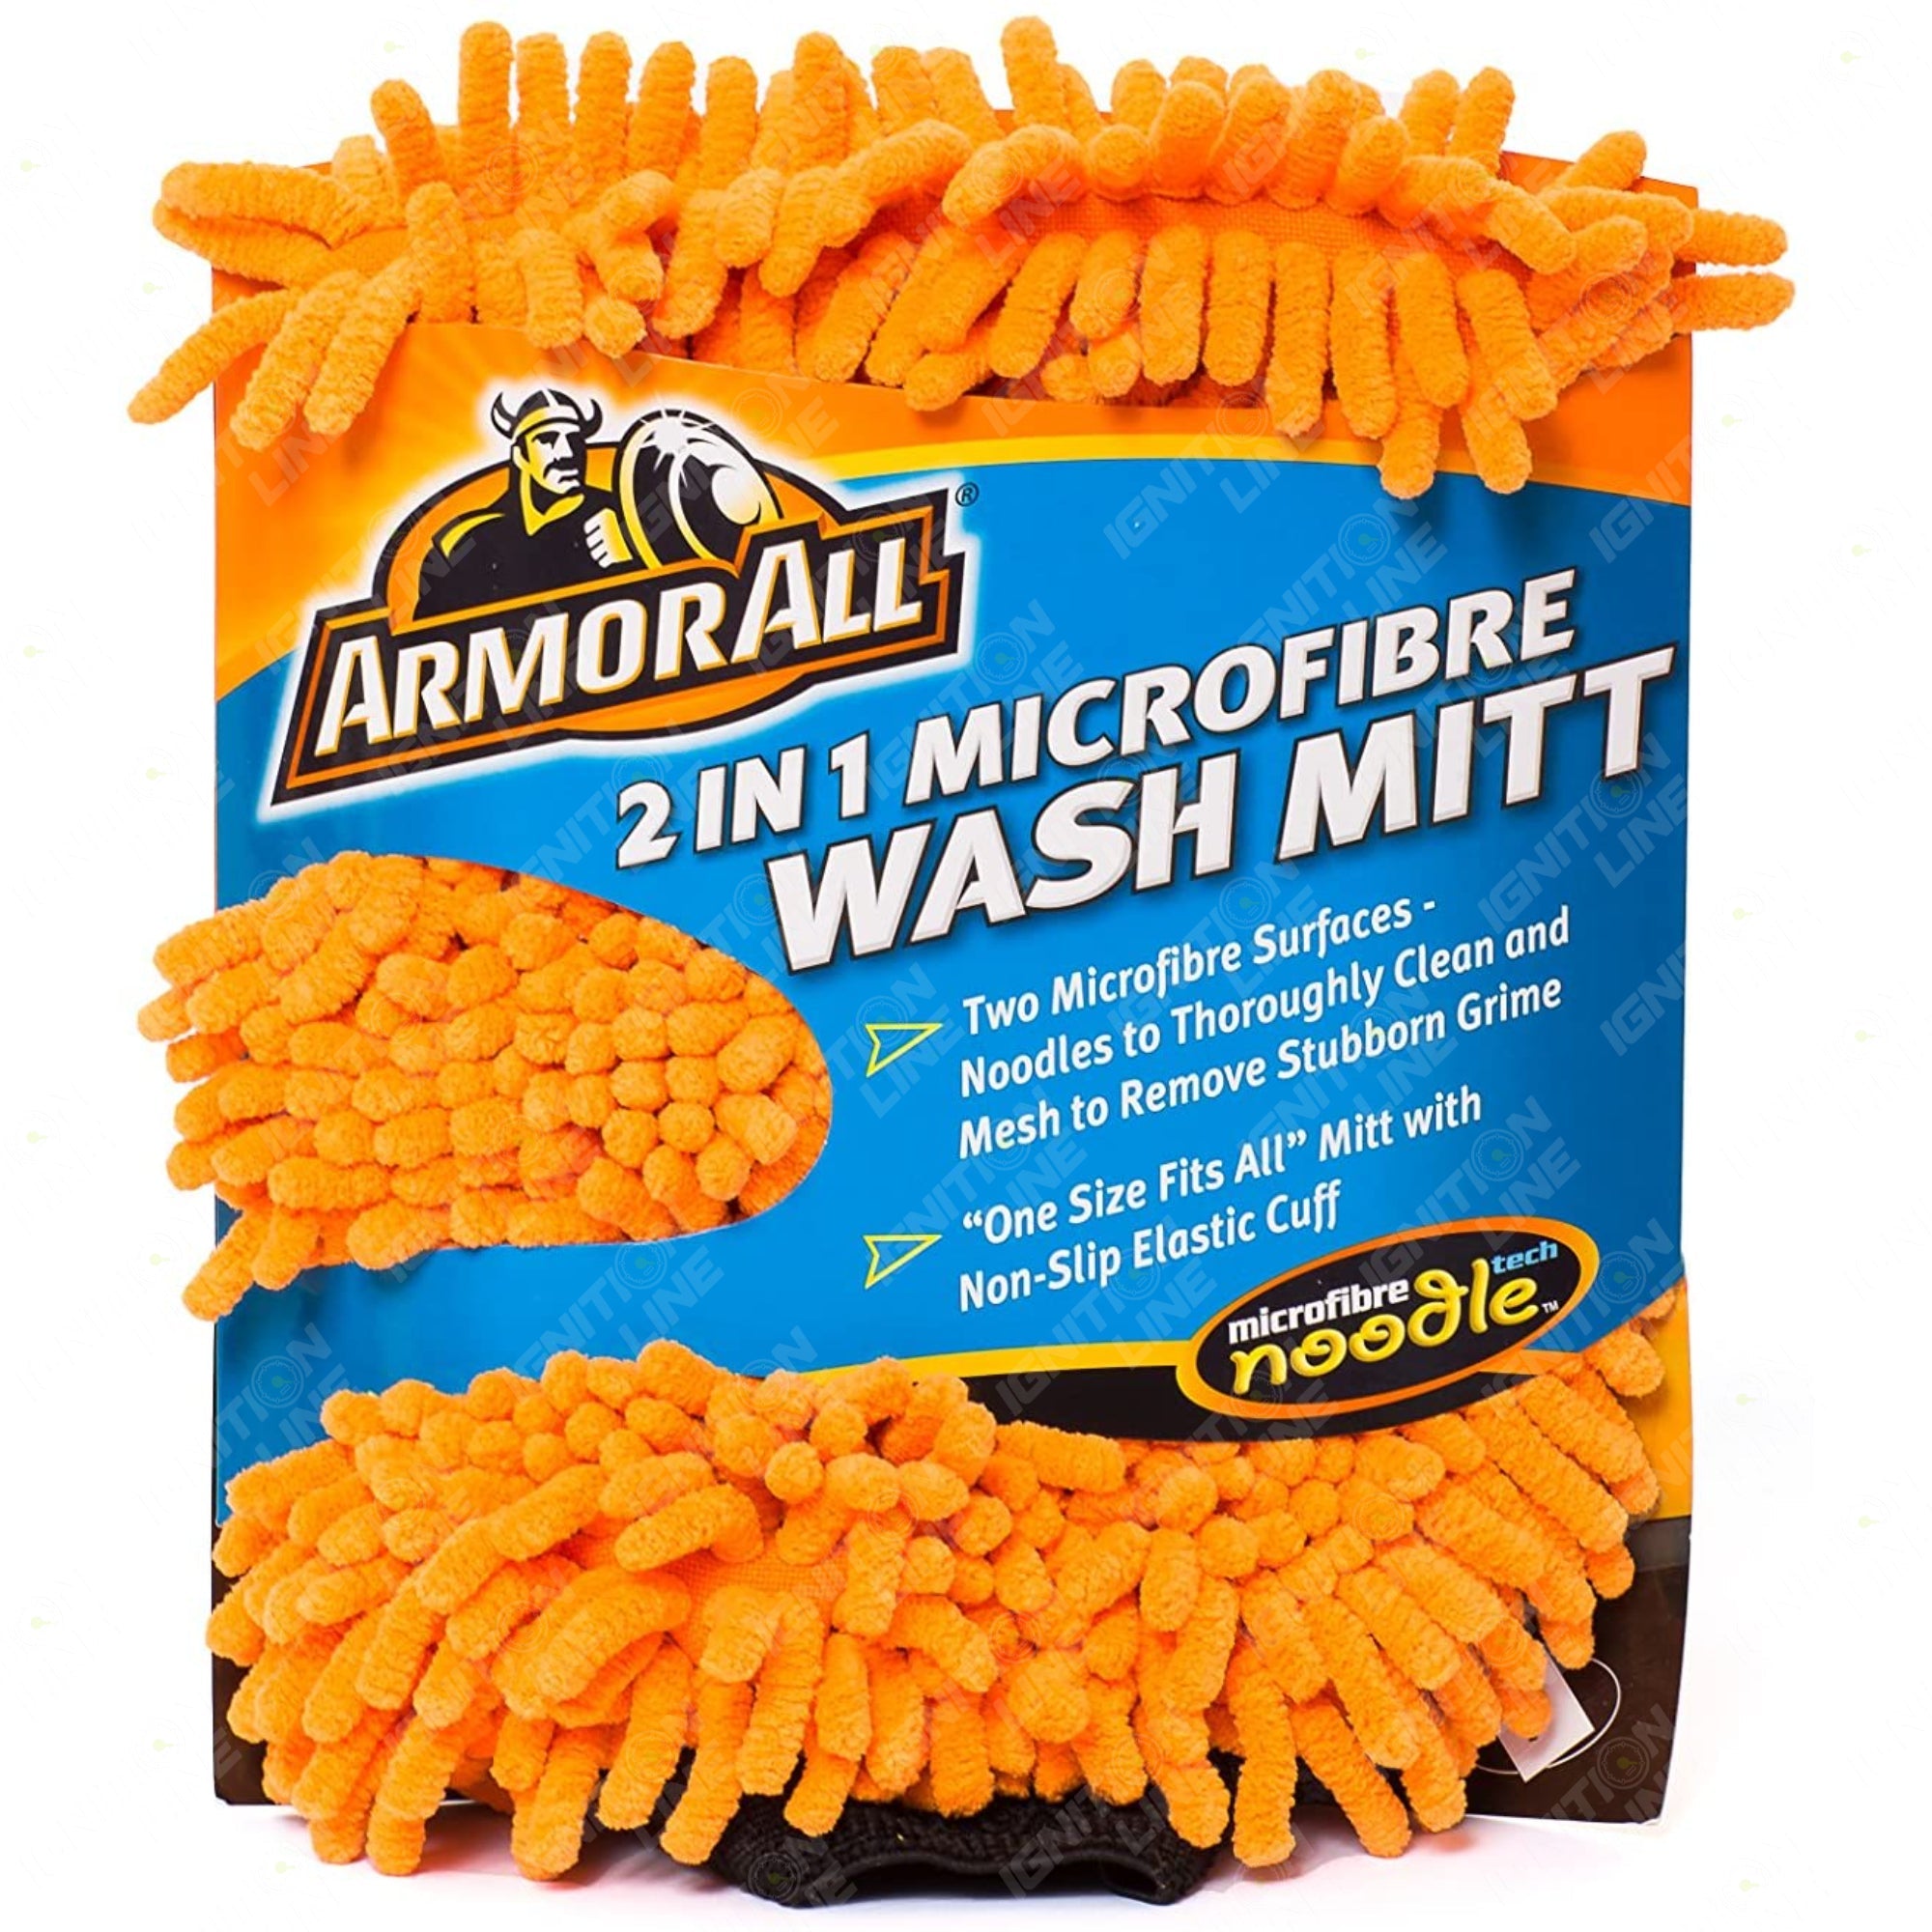 Armorall 2 in 1 Microfibre Wash Mitt